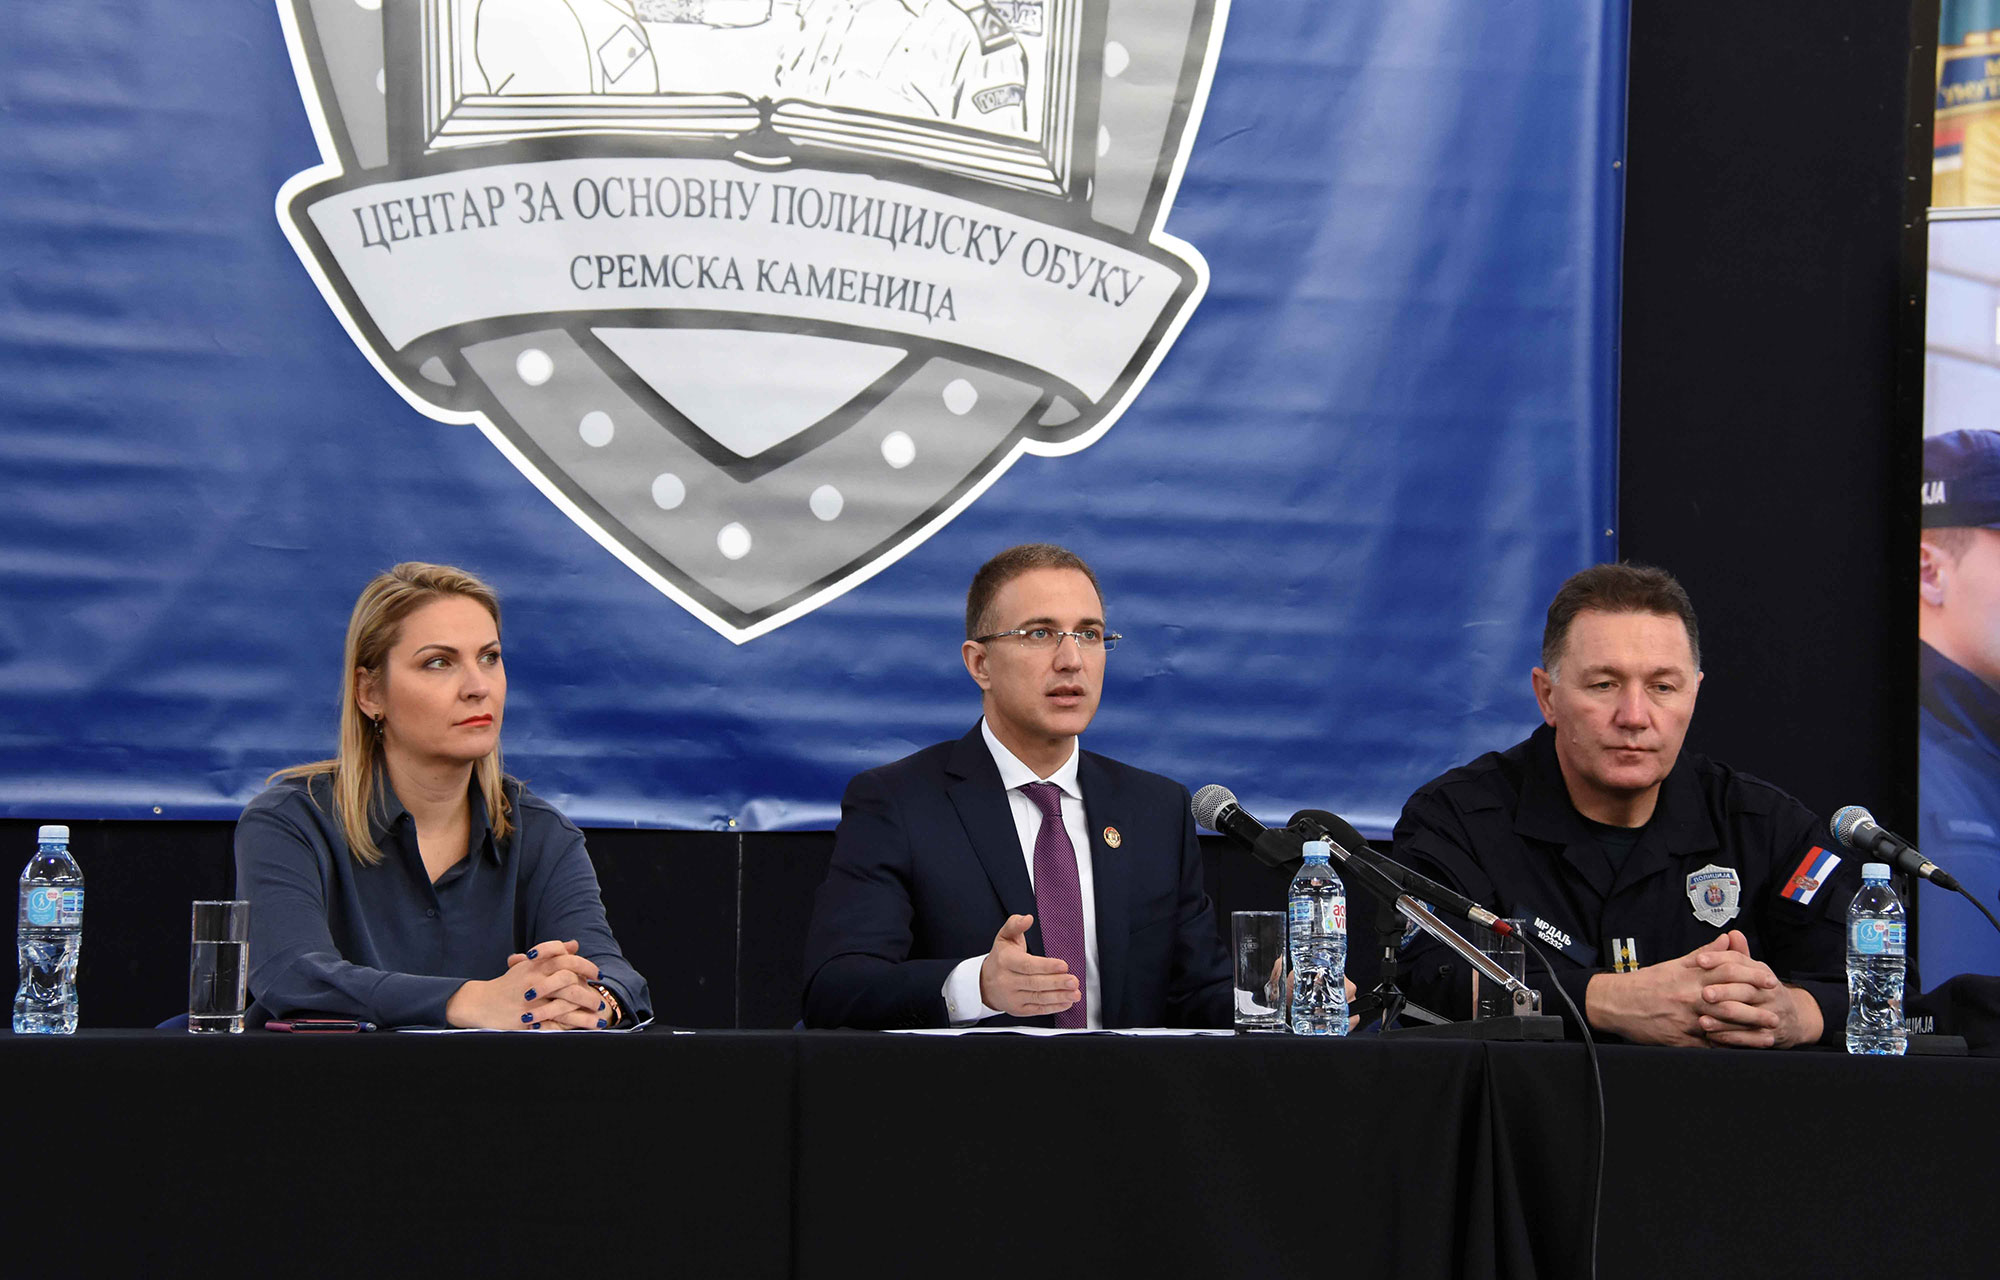 Stefanović: Zahvalјujući odličnom radu policije i drugih službi bezbednosti Srbija je stabilna i bezbedna zemlјa